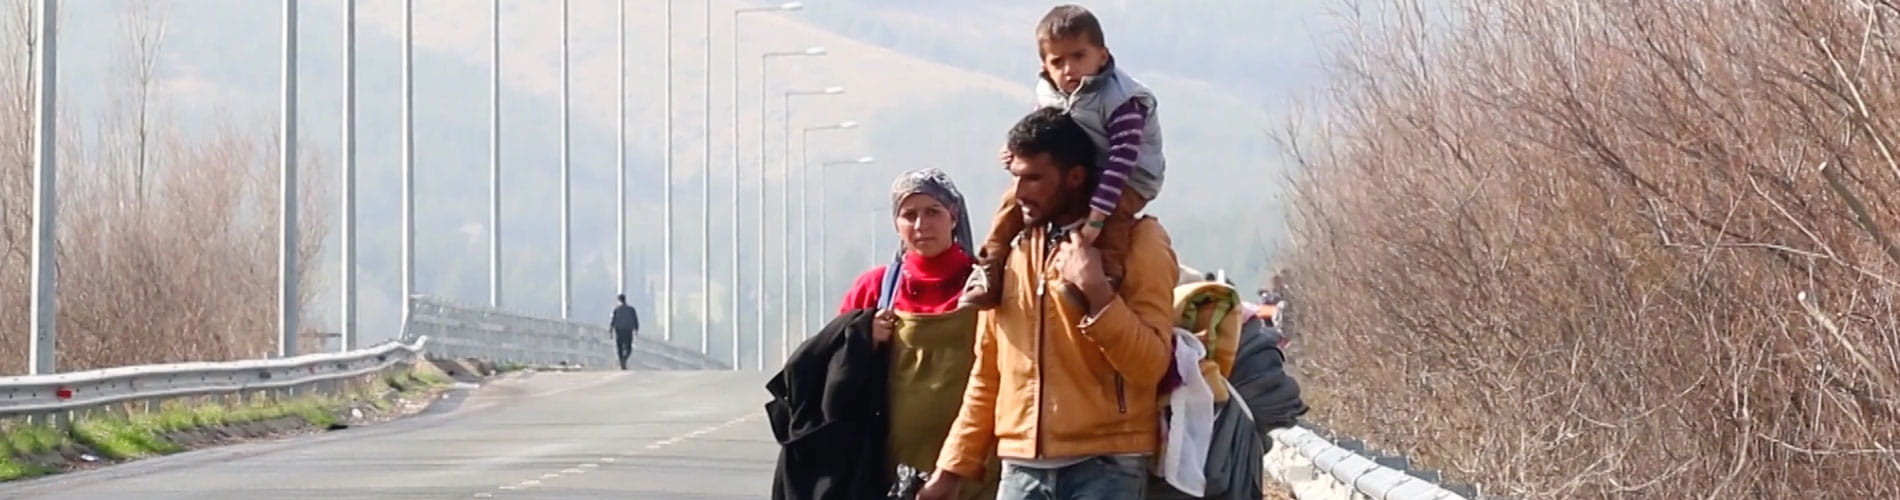  Refugee family header image